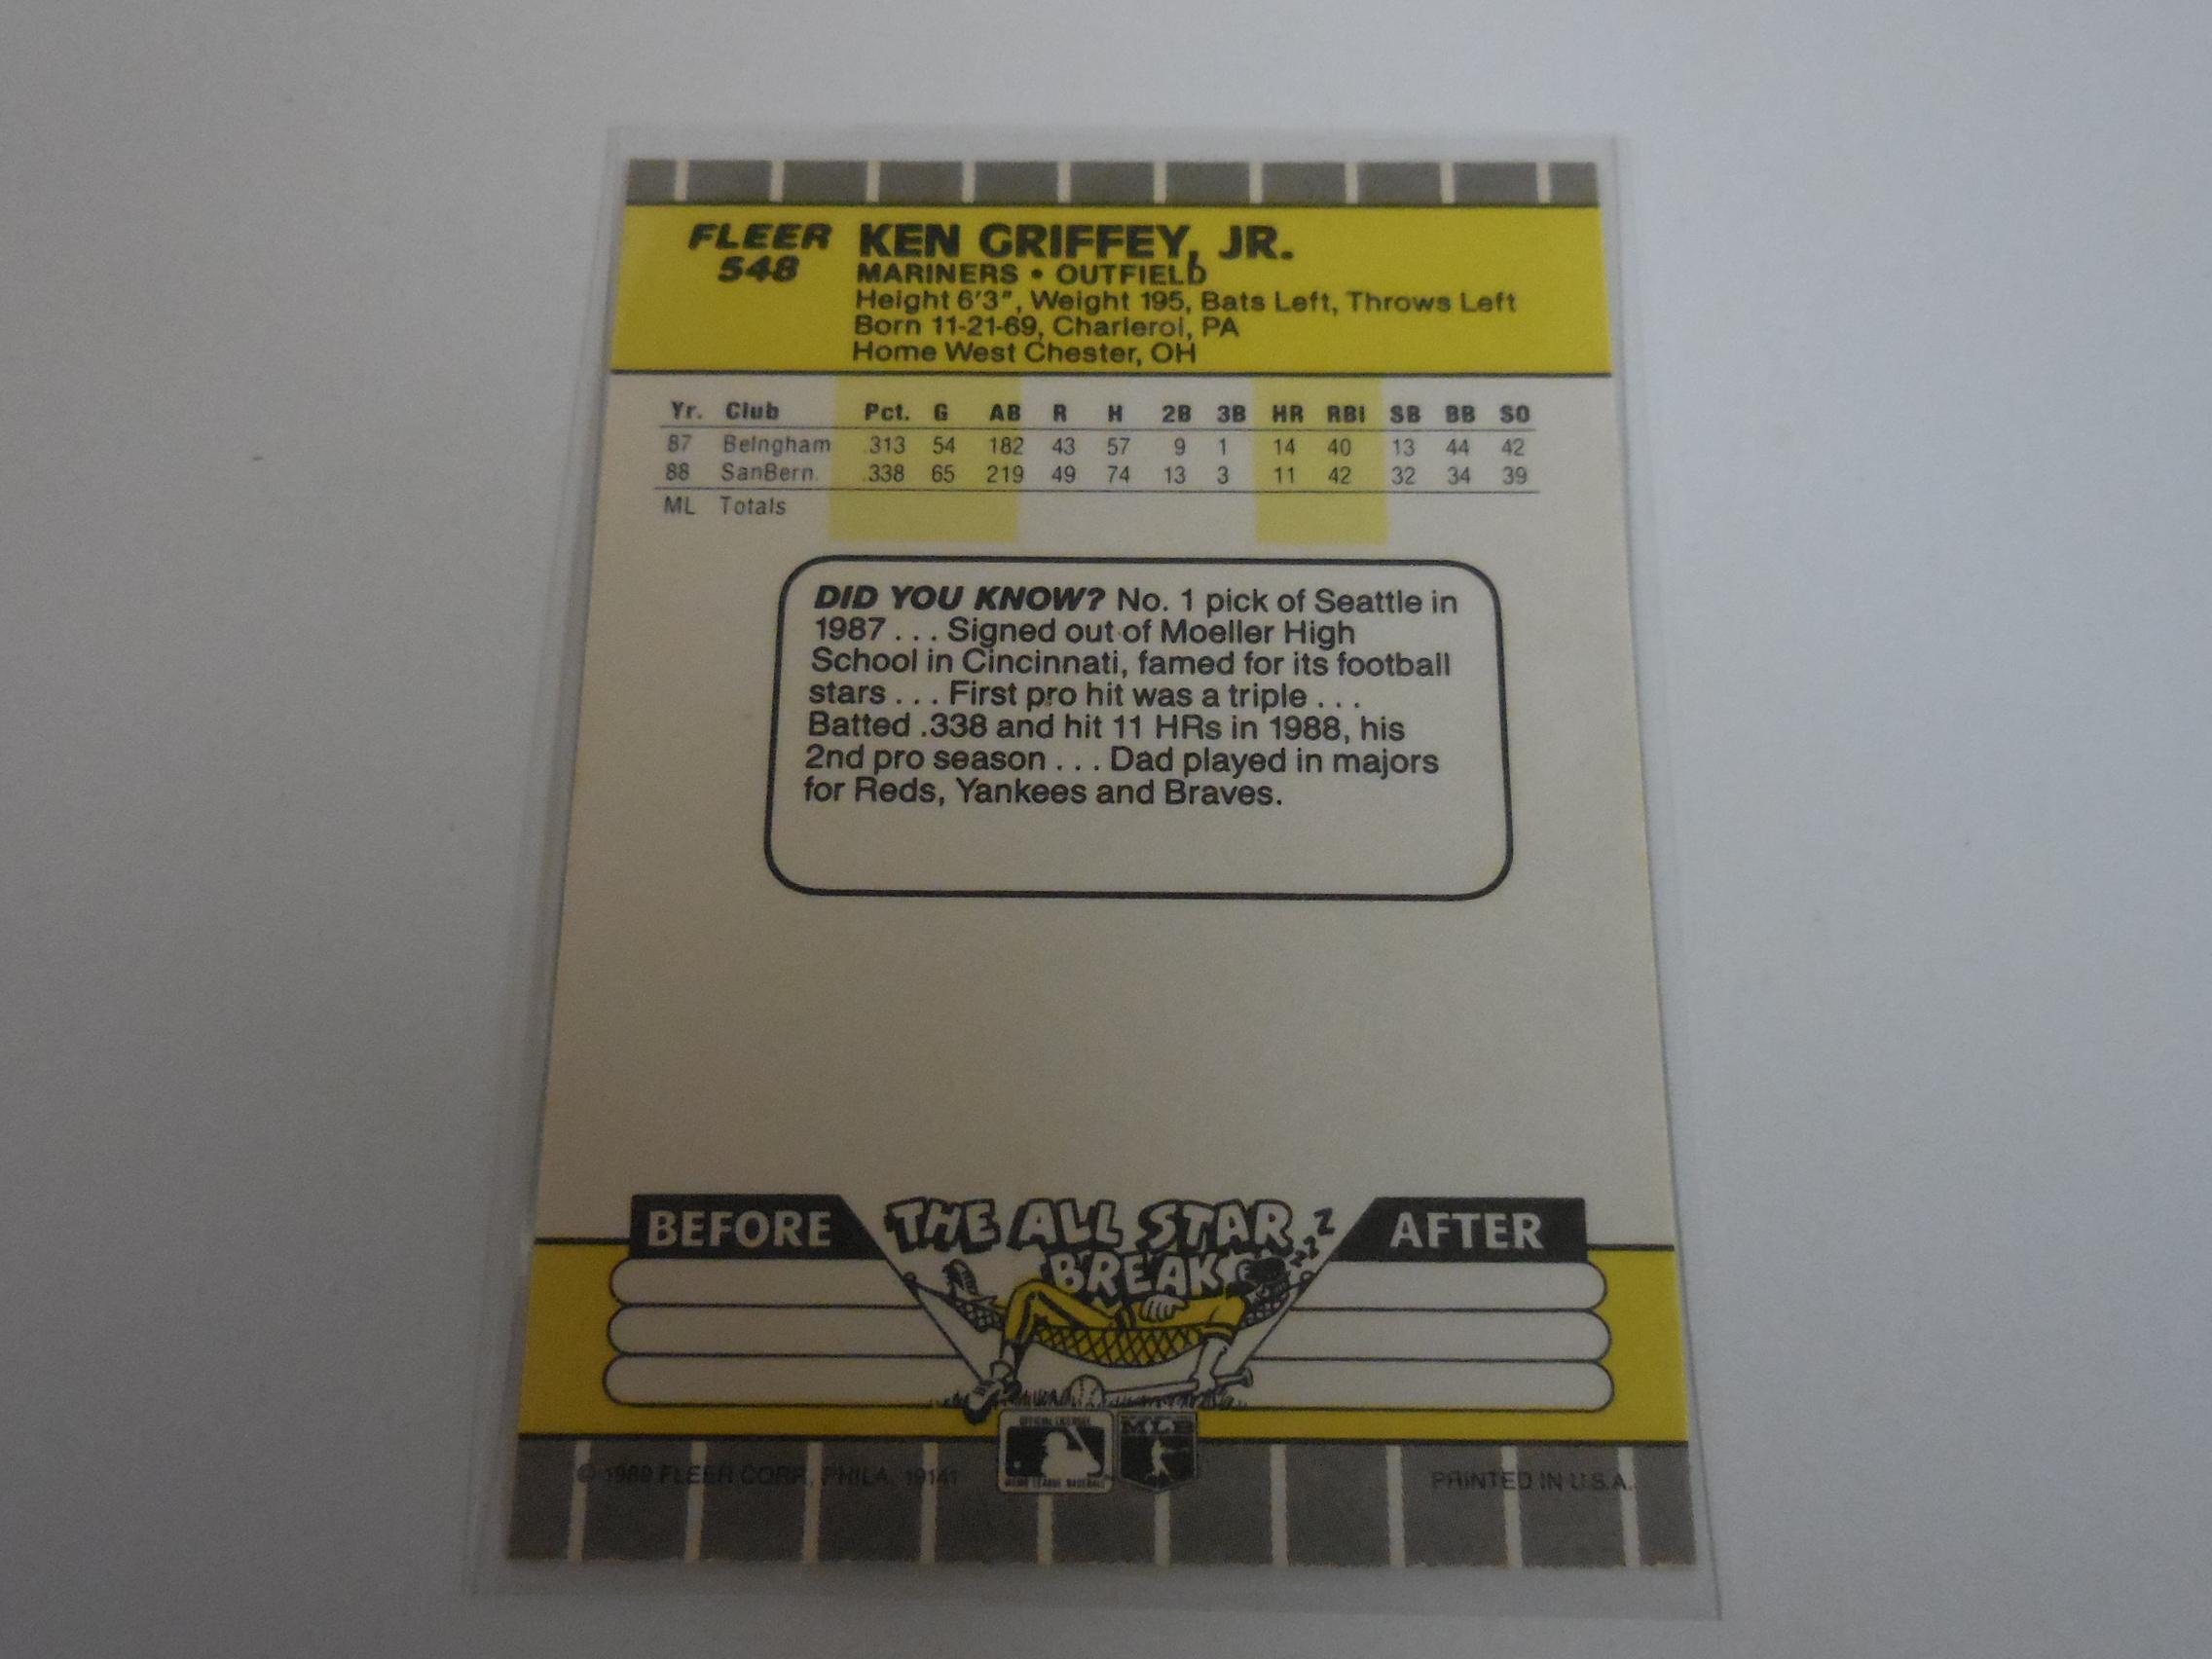 1989 FLEER BASEBALL #548 KEN GRIFFEY JR ROOKIE CARD MARINERS HOF RC